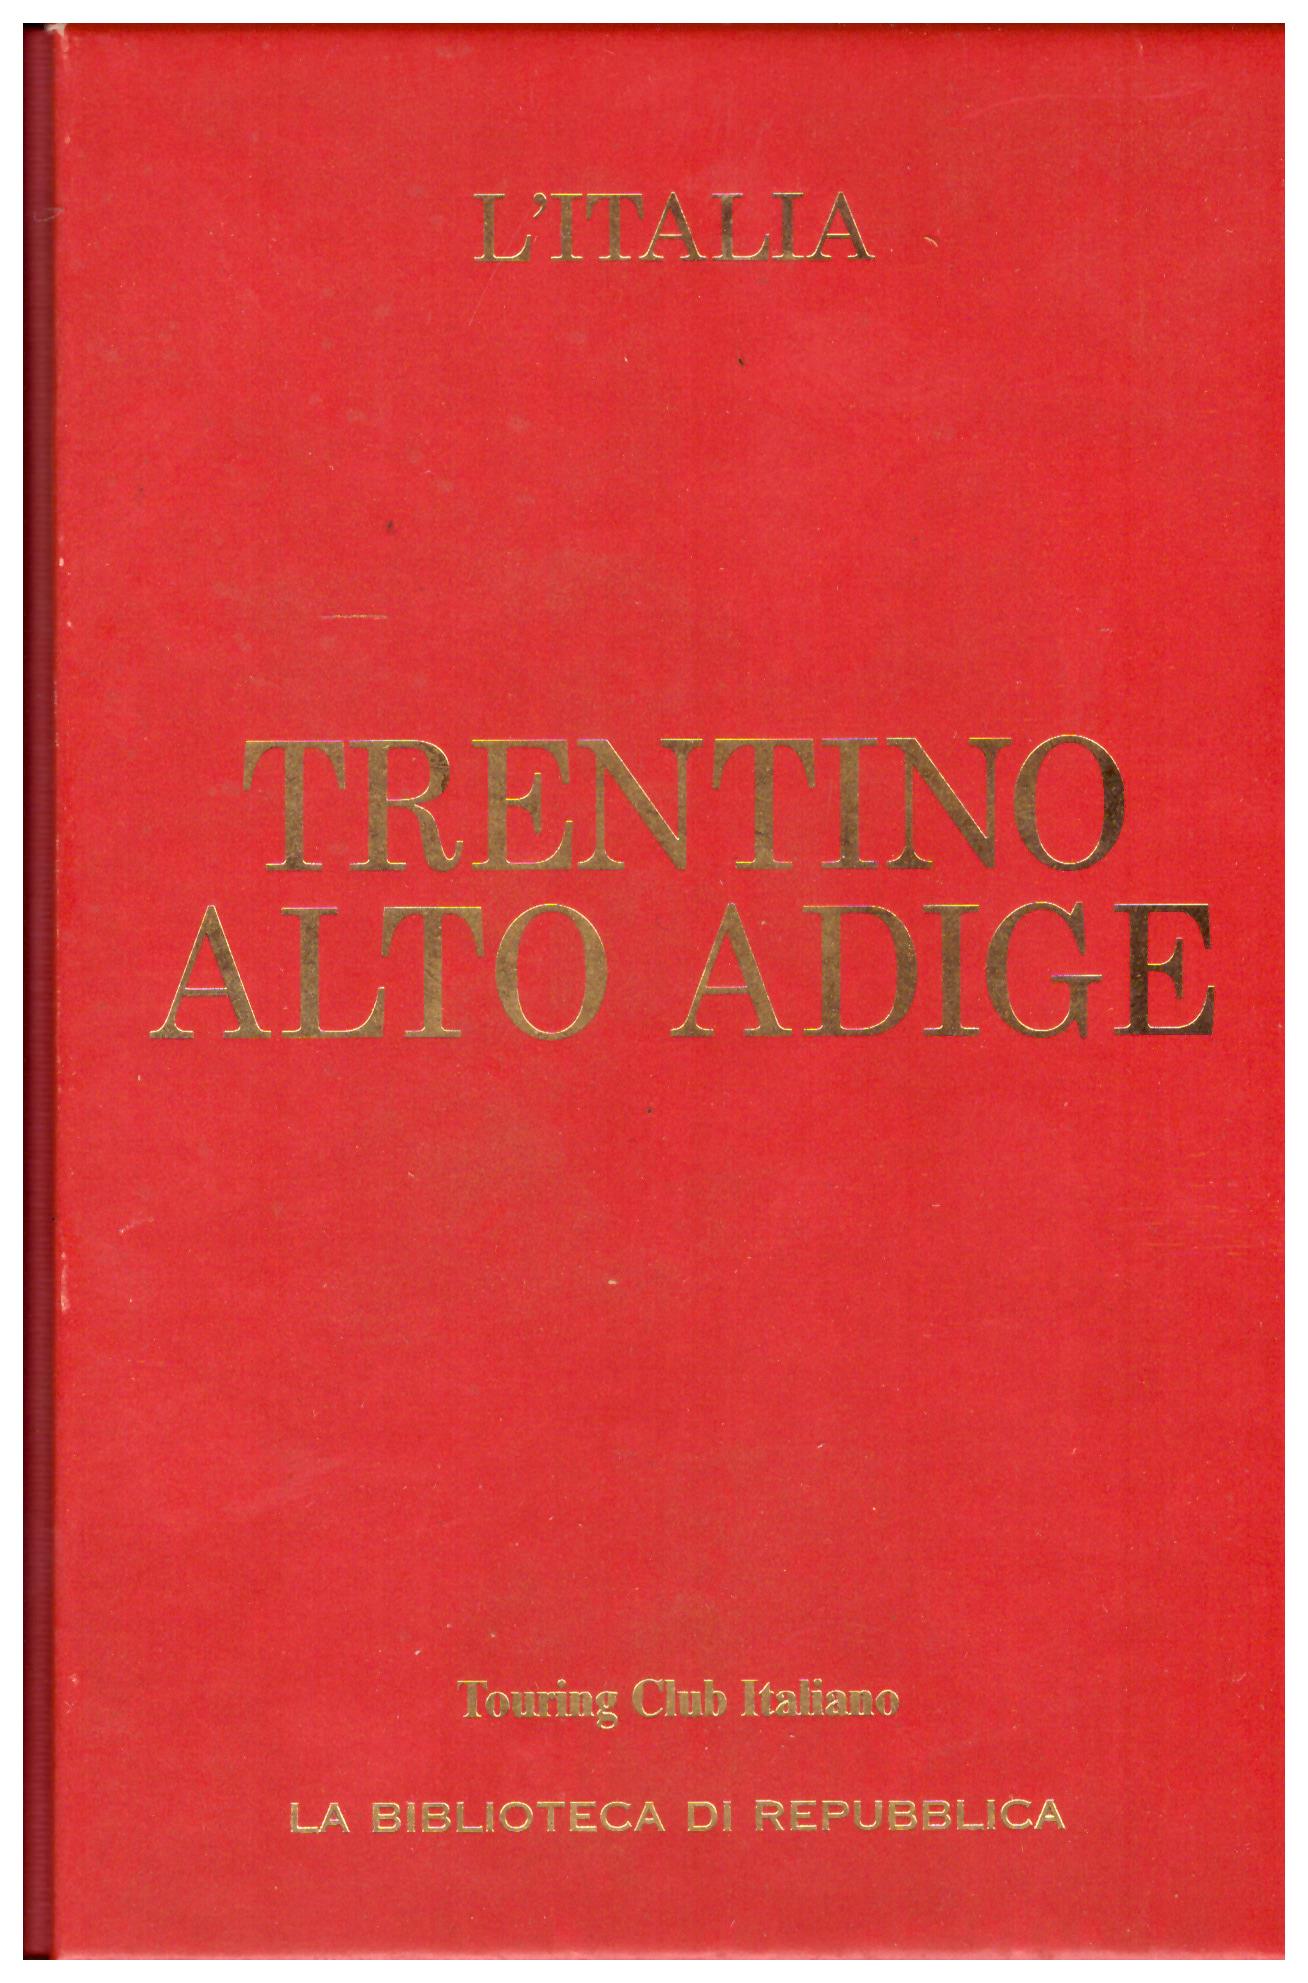 Titolo: L'Italia, Trentino Alto Adige    Autore: AA.VV.     Editore: touring club italiano, la biblioteca di Repubblica